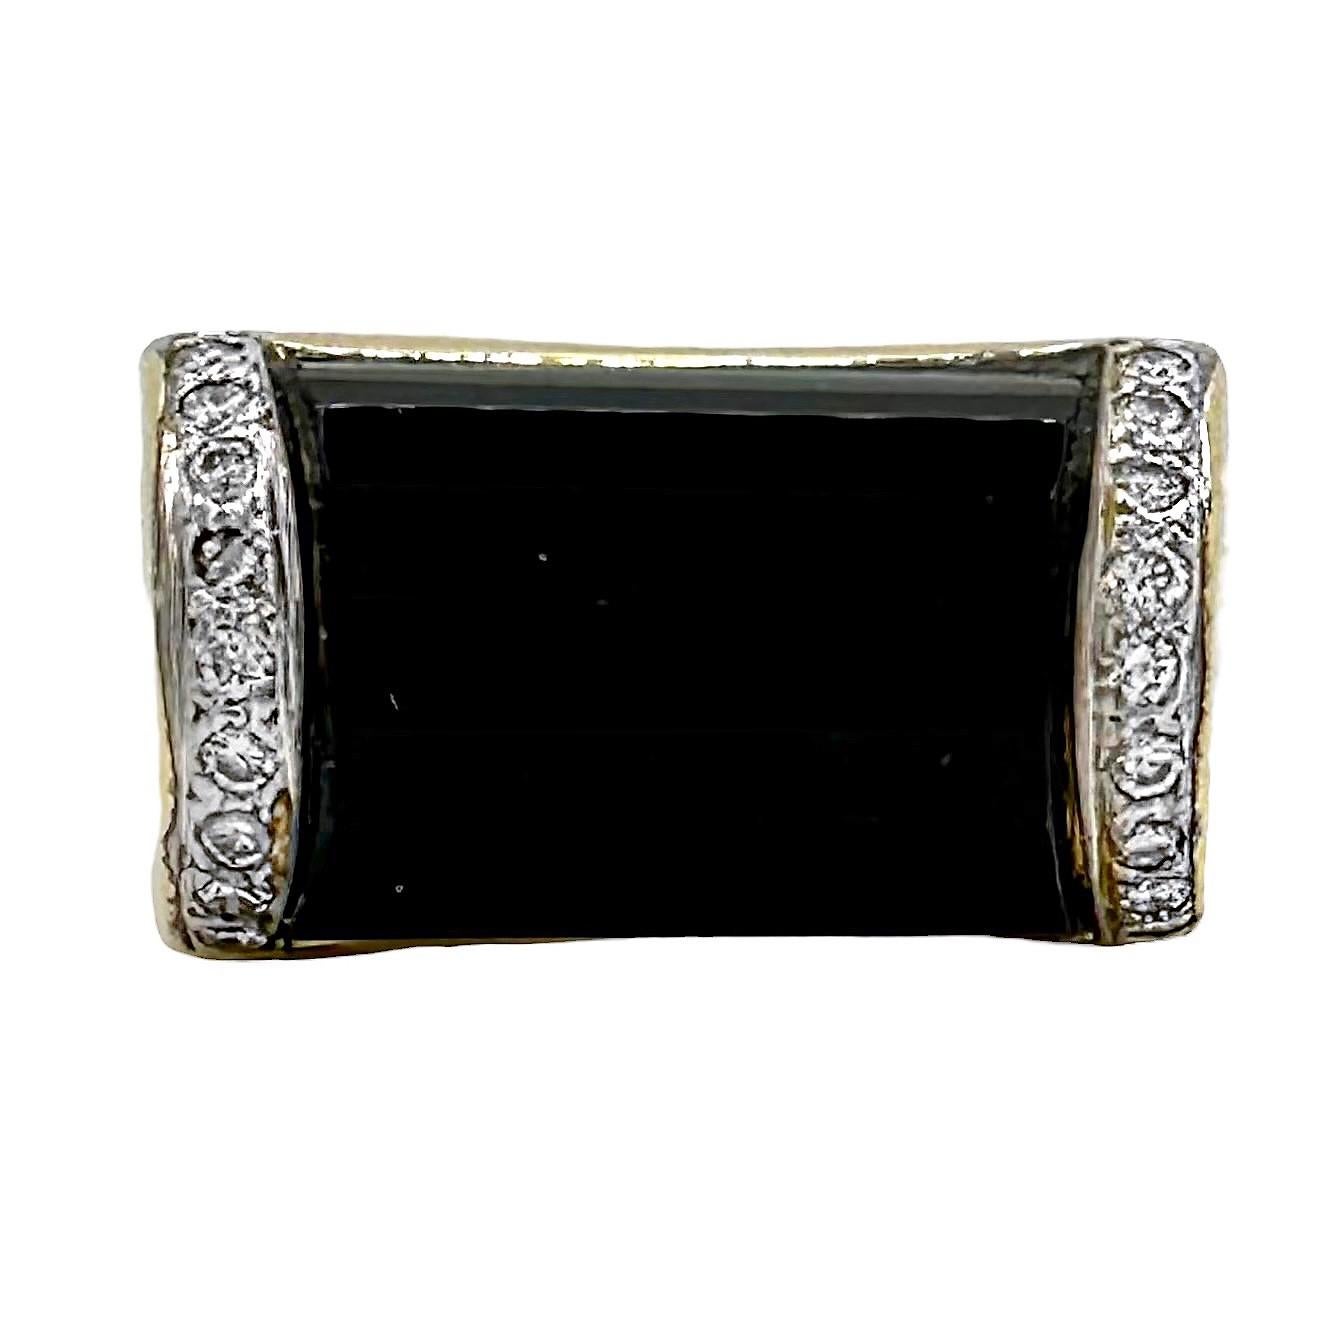 Dieser sehr schön gefertigte Vintage-Mode-Ring aus 18 Karat Gelbgold hat als Mittelpunkt einen 5/8 Zoll langen, facettierten schwarzen Onyx-Cabochon. Flankiert wird dies von insgesamt achtzehn Diamanten im Brillantschliff mit einem ungefähren